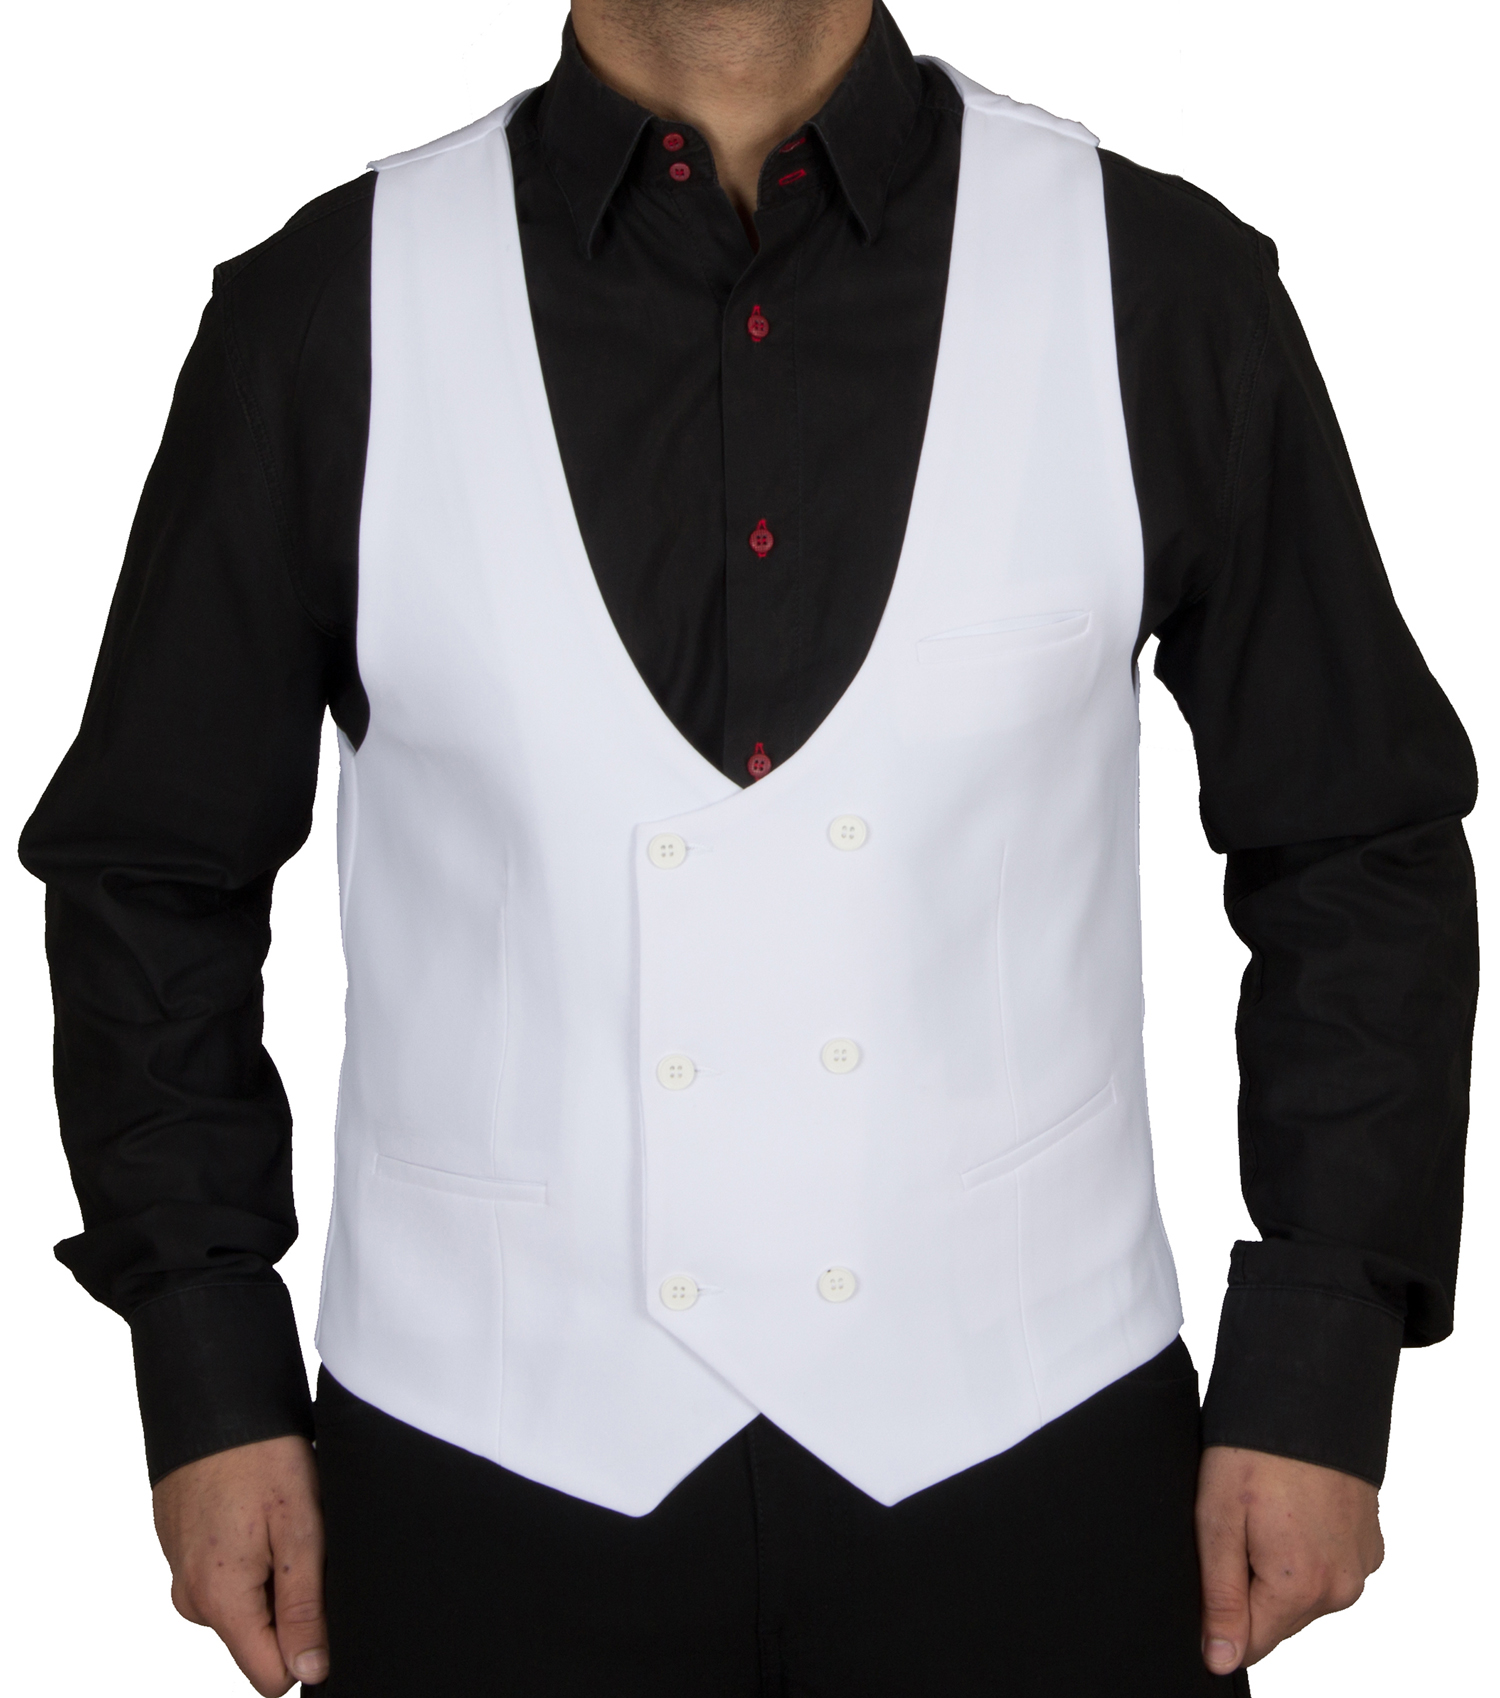 Alvivi Pailletten Weste Herren Anzug V-Ausschnitt Anzug-Weste Bra Weste MODERN Performance Shirts Slim Fit Top 